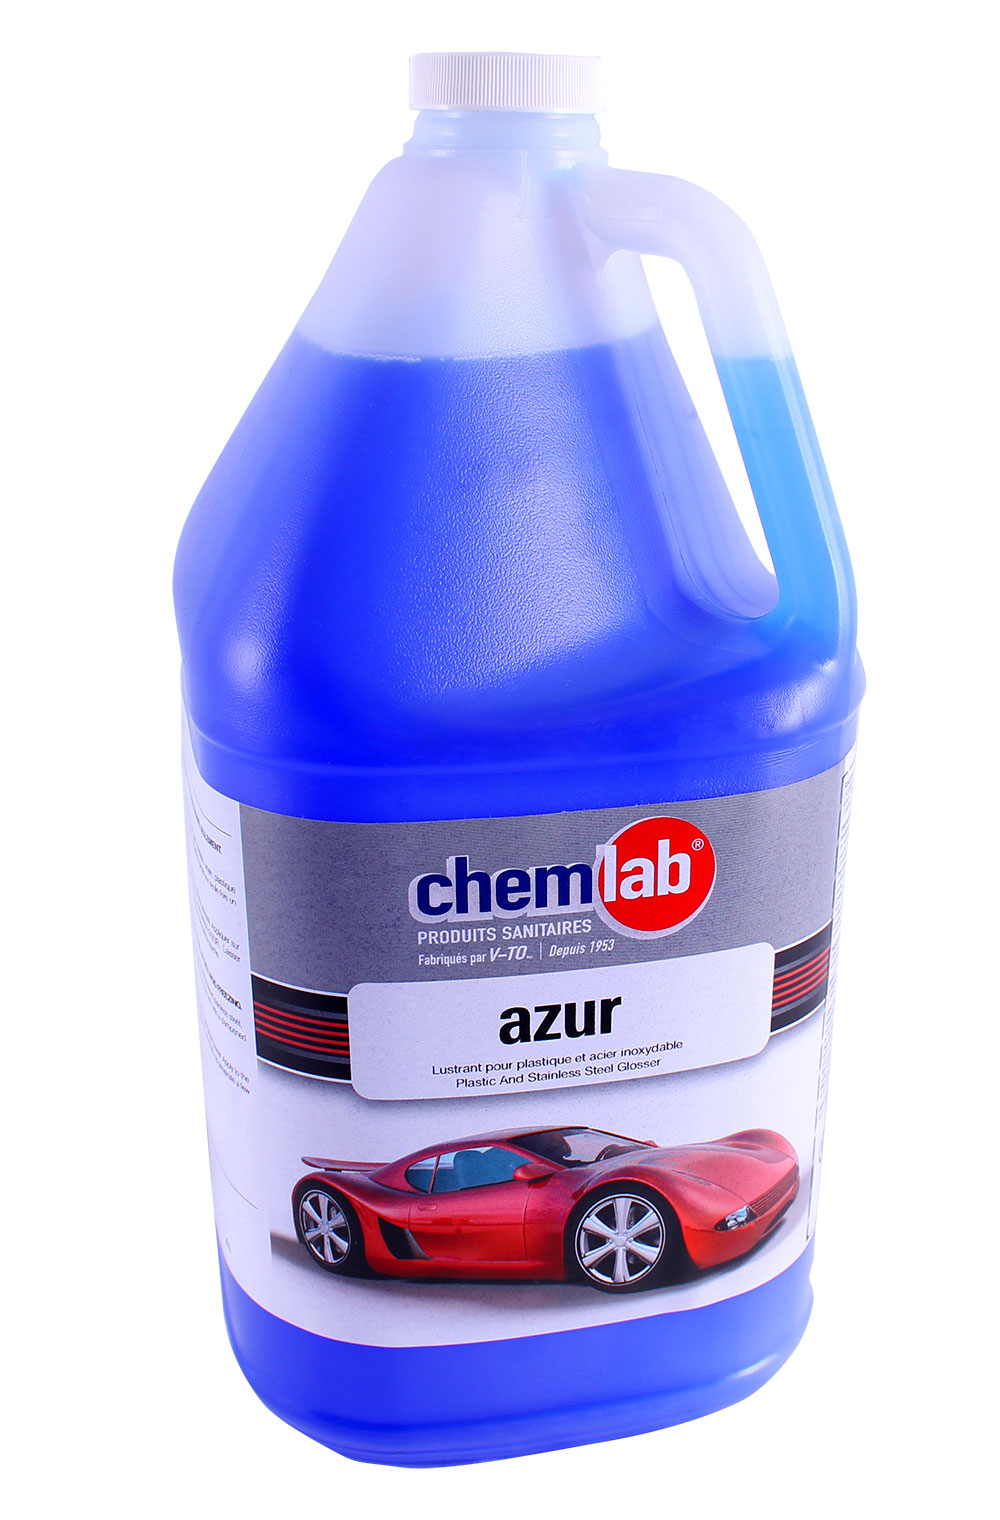 Azur – Lustrant pour plastique et acier inoxydable